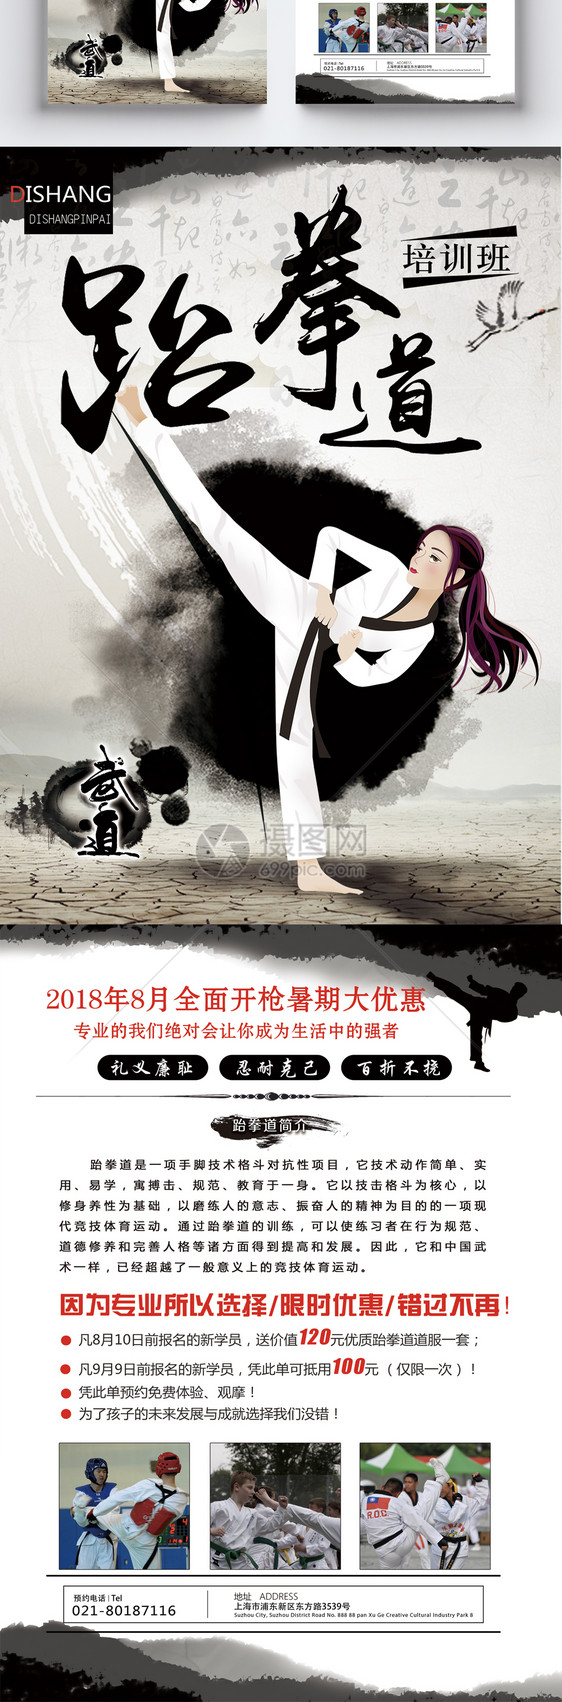 中国风跆拳道培训宣传单图片